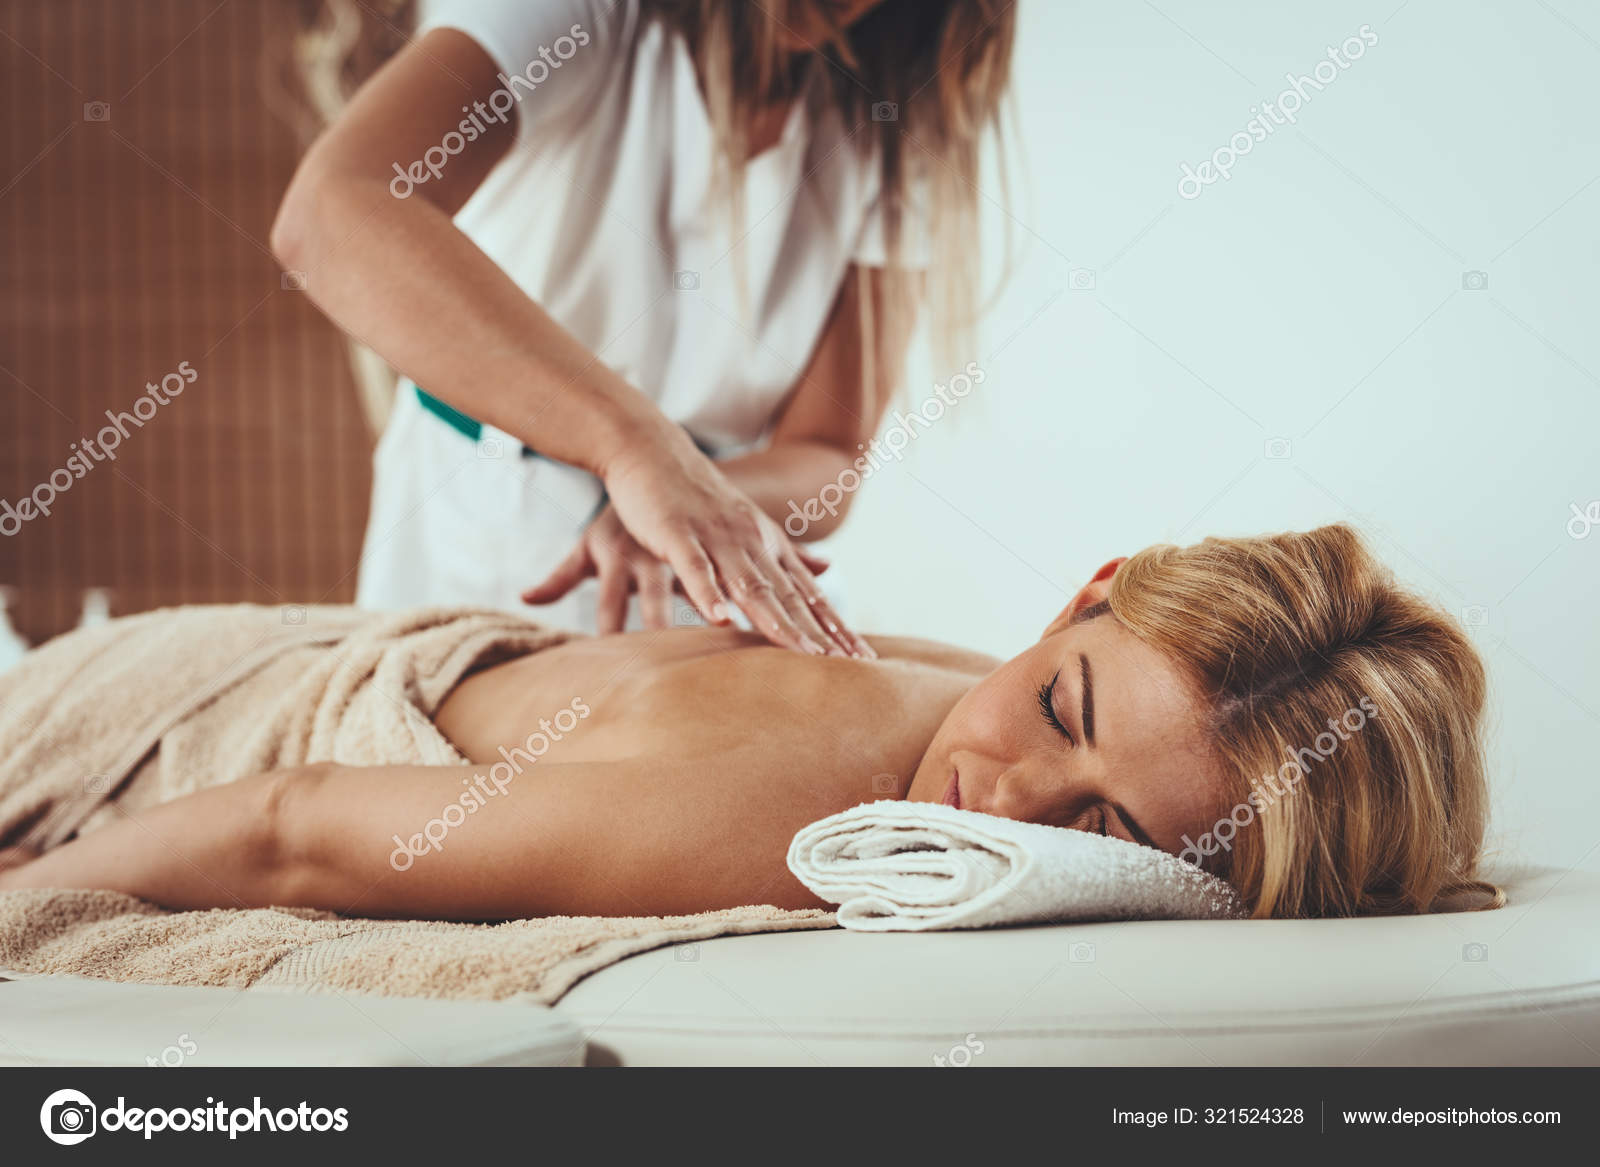 https://st3.depositphotos.com/1004918/32152/i/1600/depositphotos_321524328-stock-photo-beautiful-young-woman-lying-massage.jpg